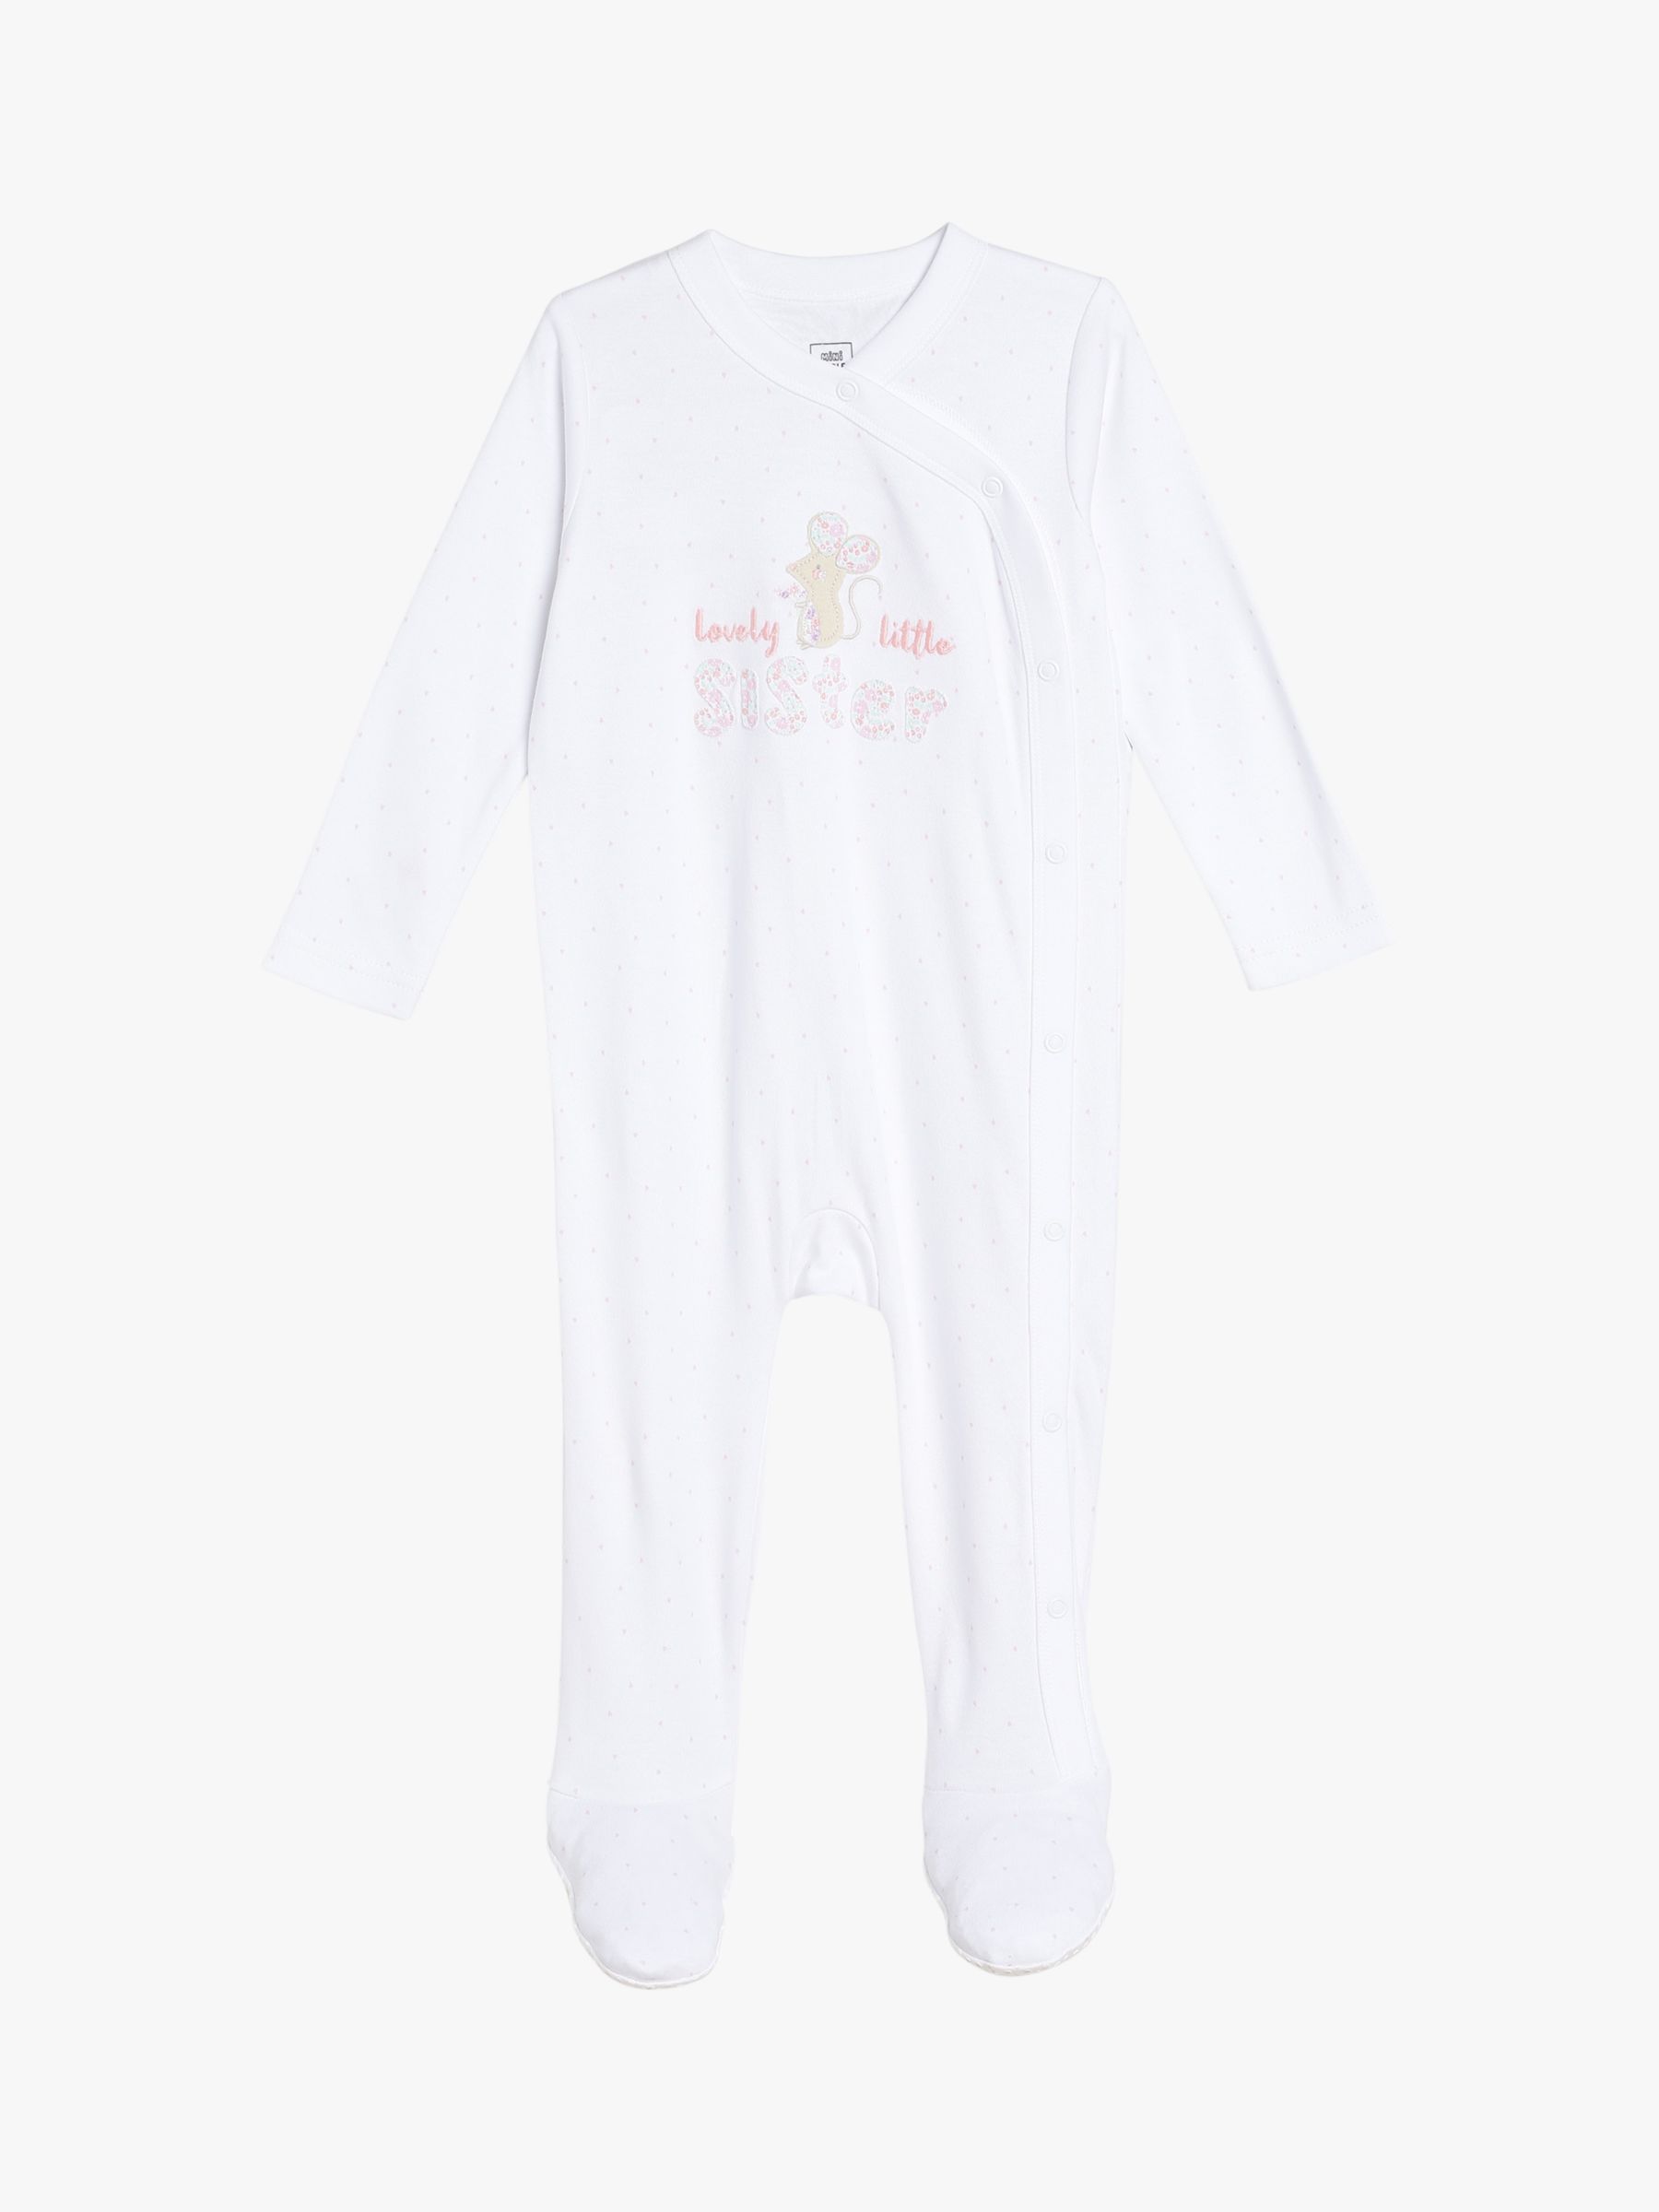 Mini Cuddles Baby Lovely Little Sister Sleepsuit, White, Newborn